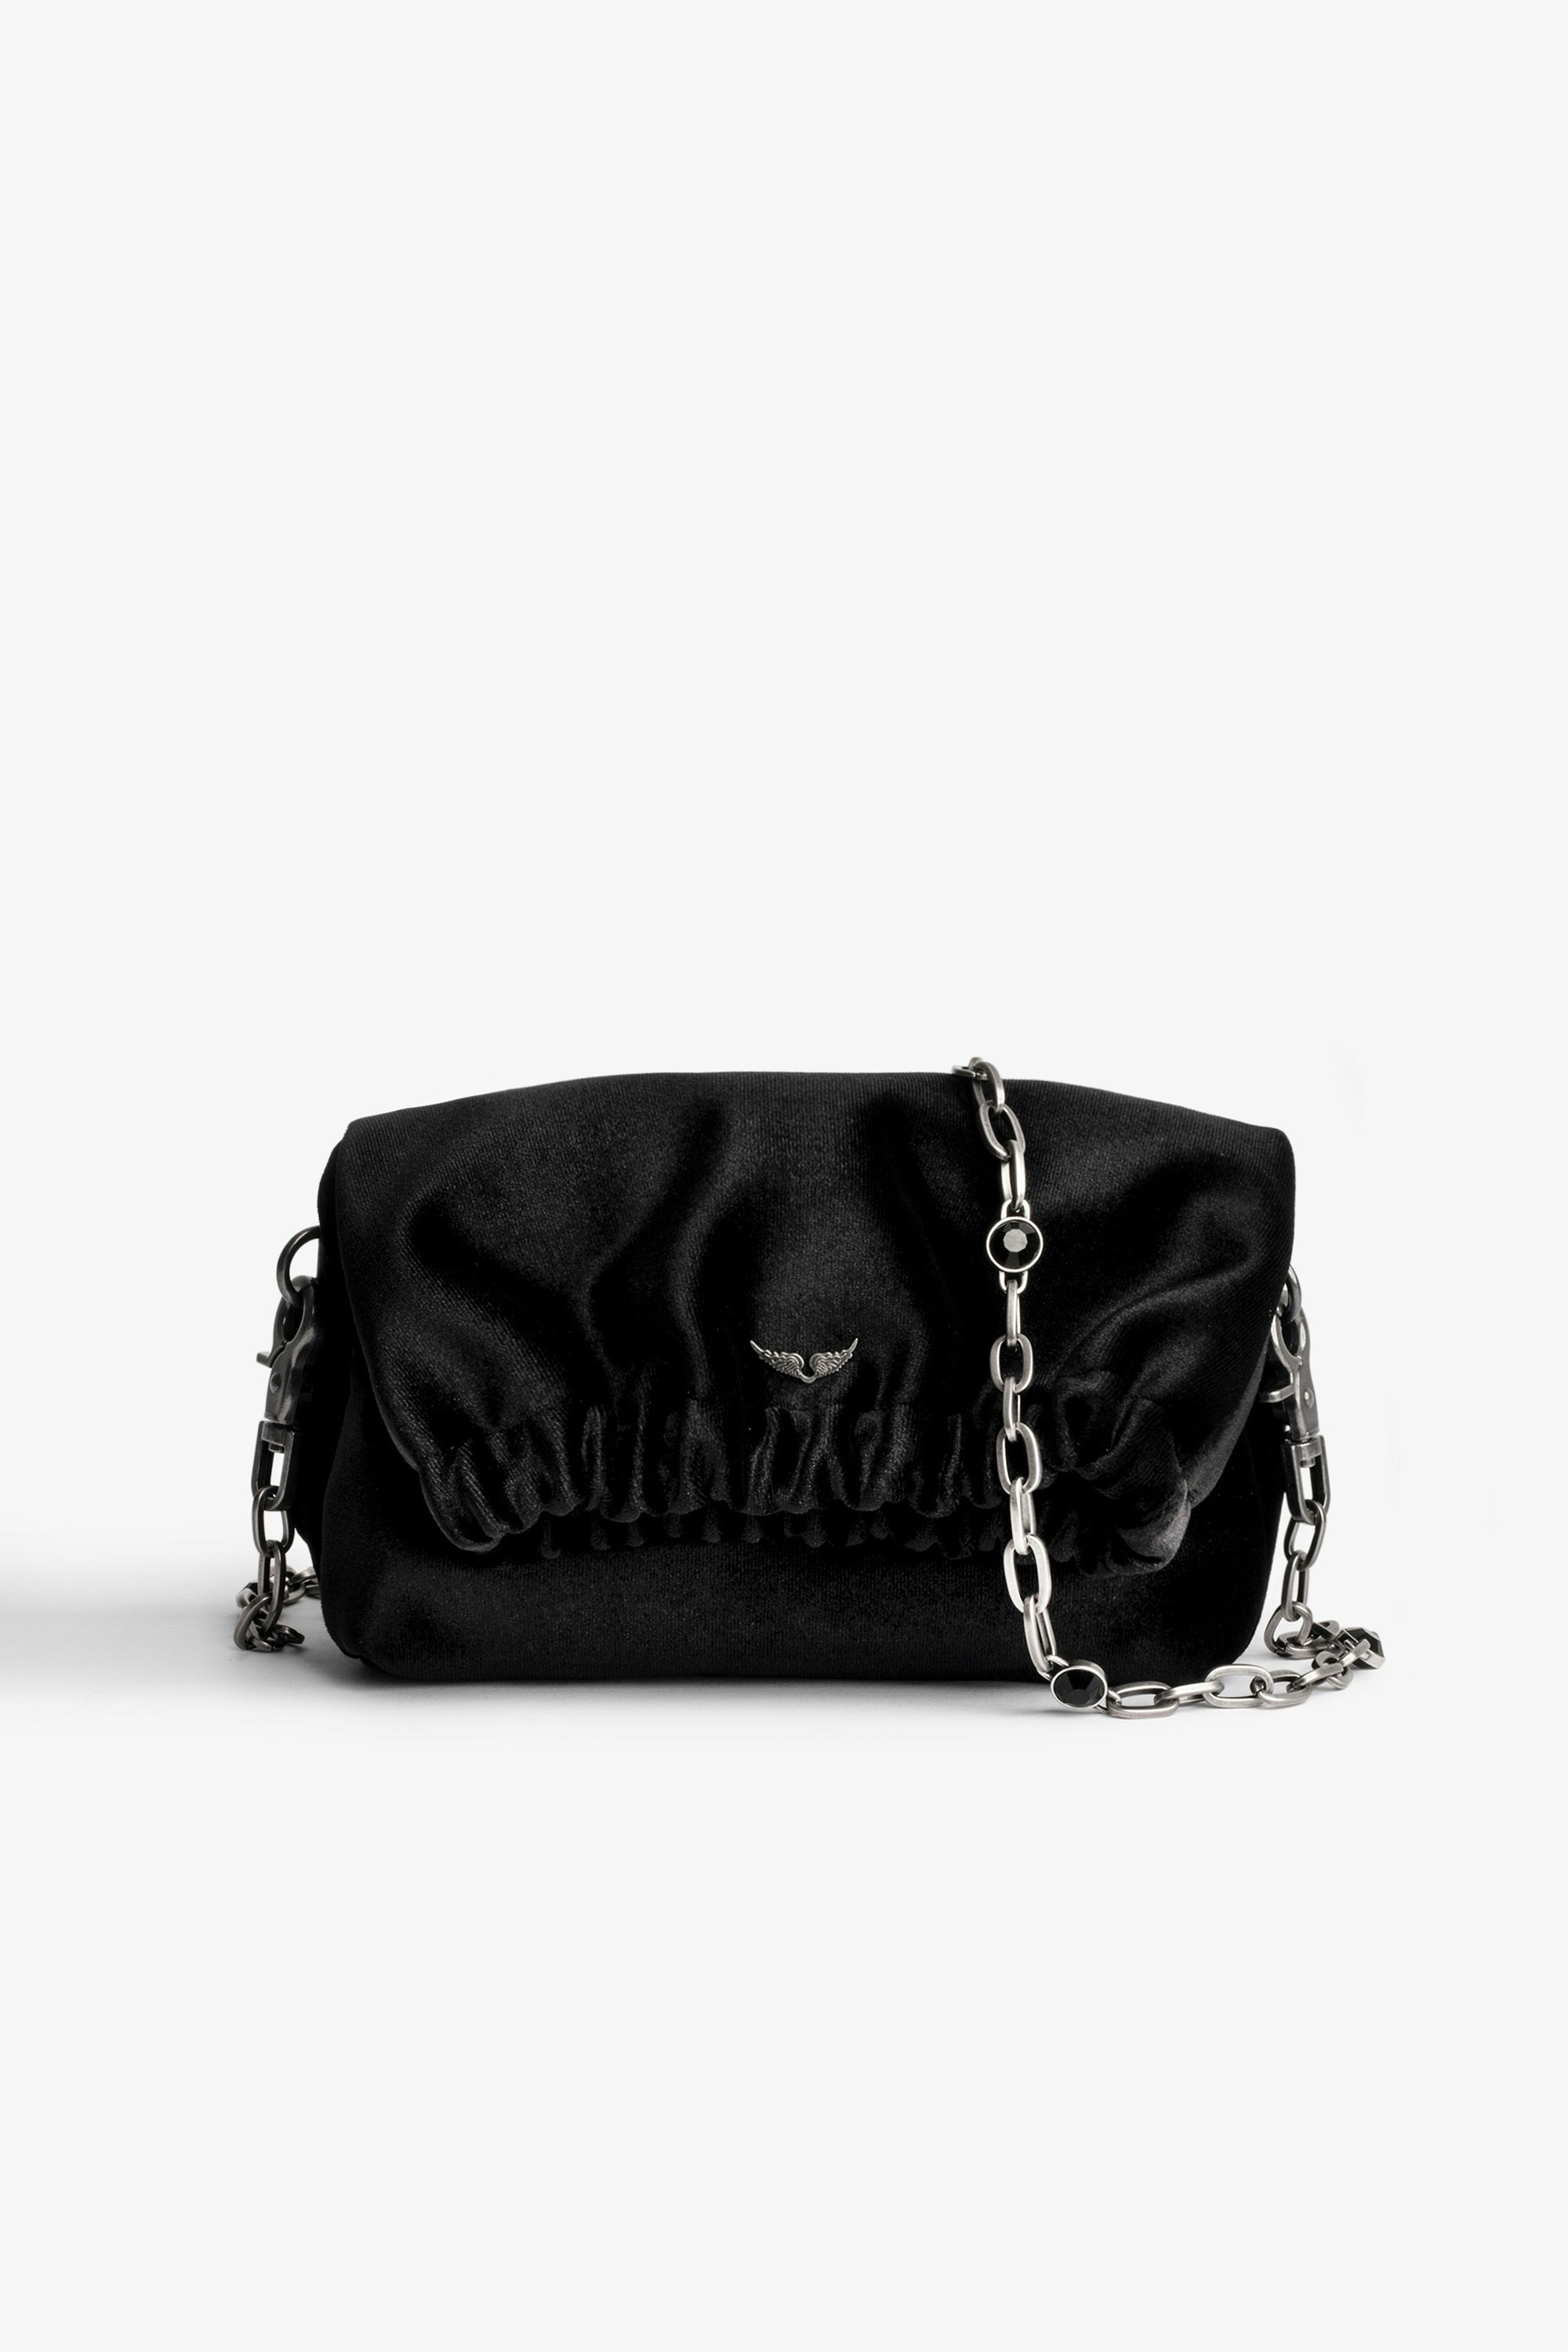 Rockyssime XS Velvet Bag Women’s small black velvet bag